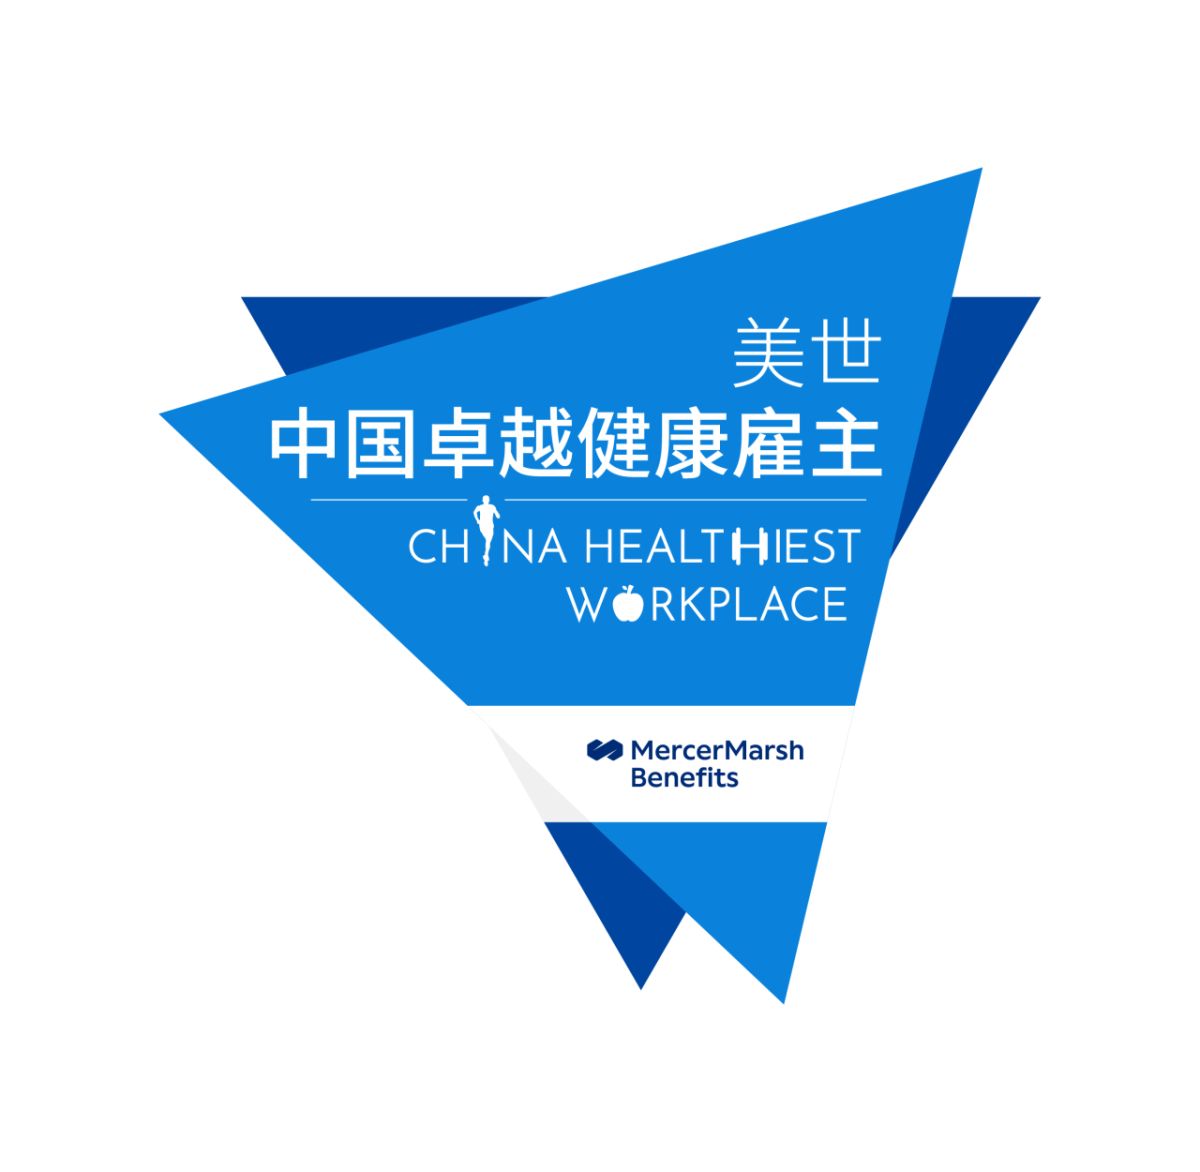 "China Healthiest Workplace, MercerMarsh Benefits" logos